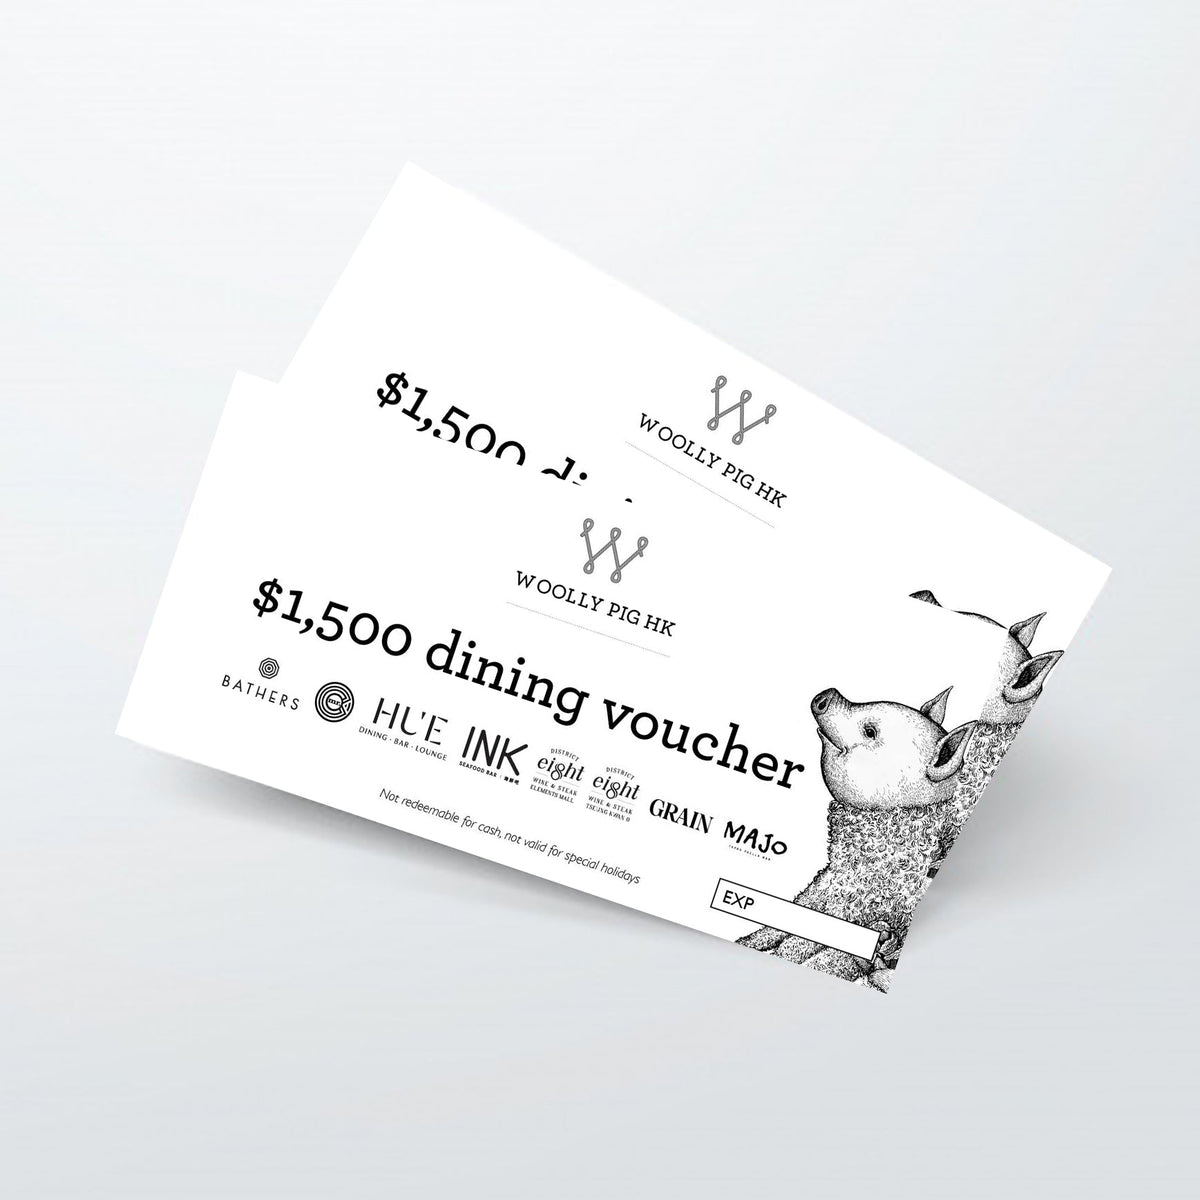 Dining Voucher $1500 - Woolly Pig Hong Kong